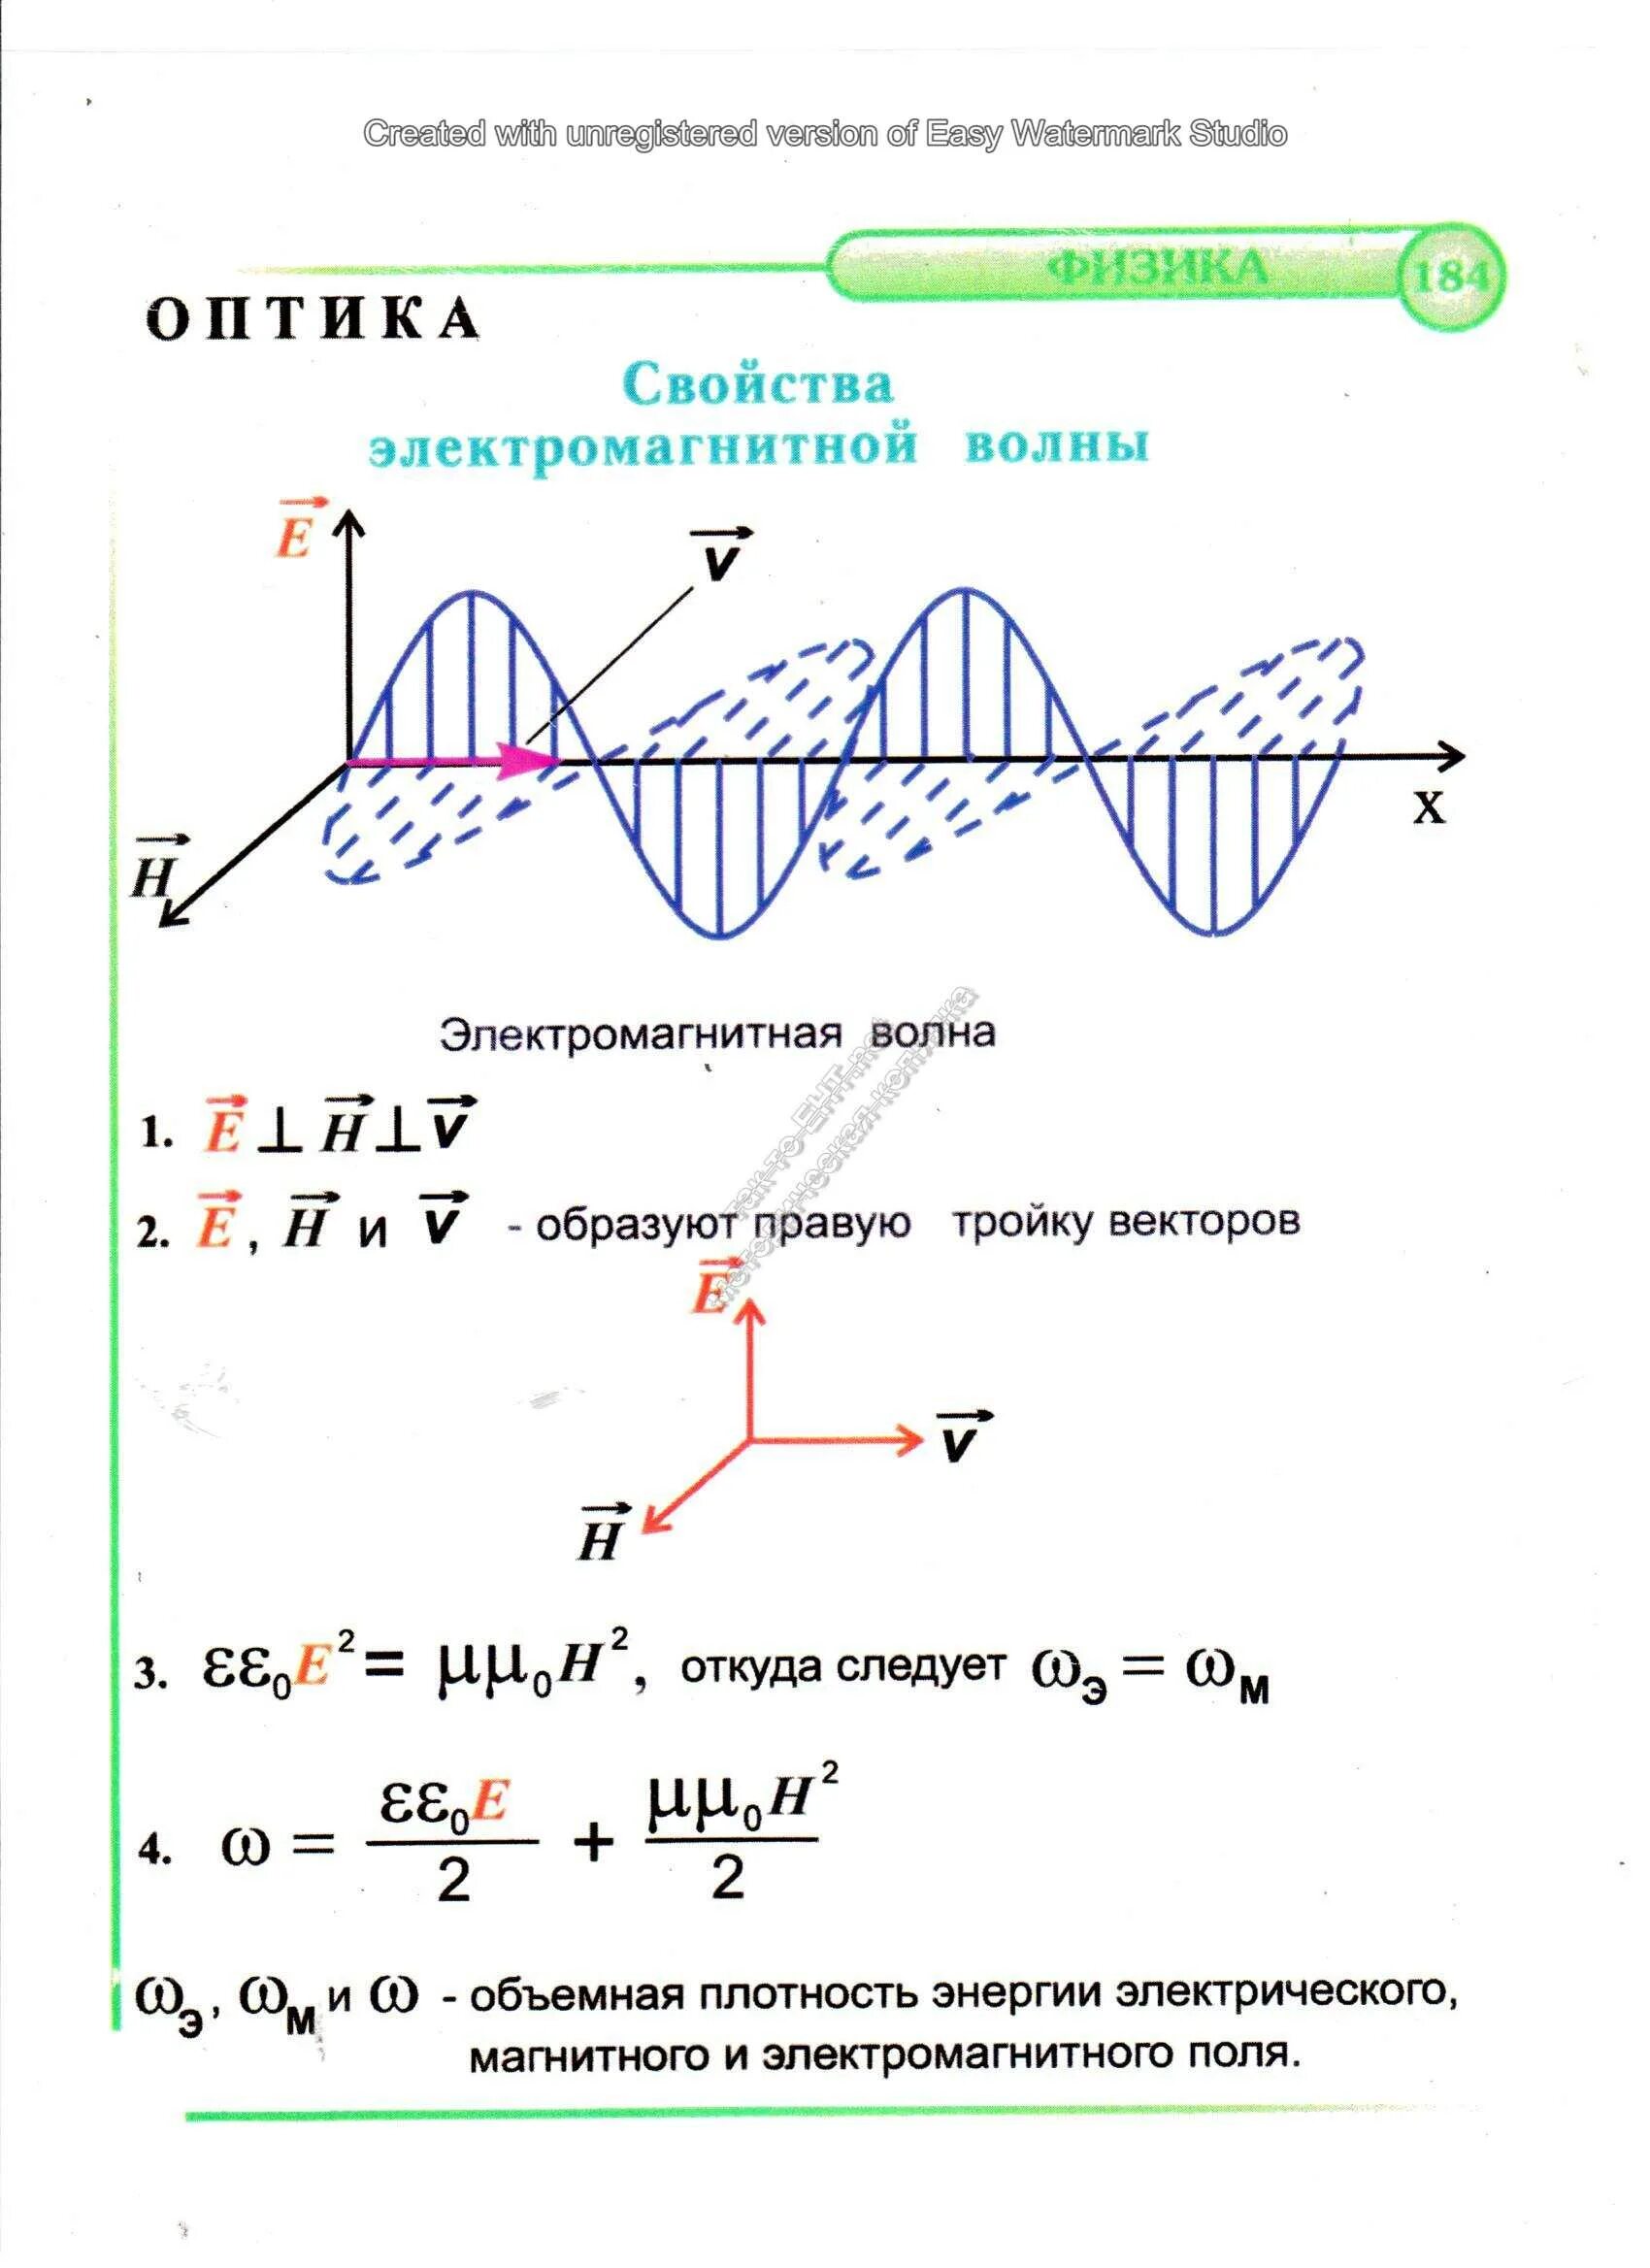 Опорный конспект по физике электромагнитные волны. Свойства электромагнитных волн формула. Характеристики магнитных волн. Электромагнитные волны физика 11 класс формулы. Индуктивность катушки электромагнитной волны